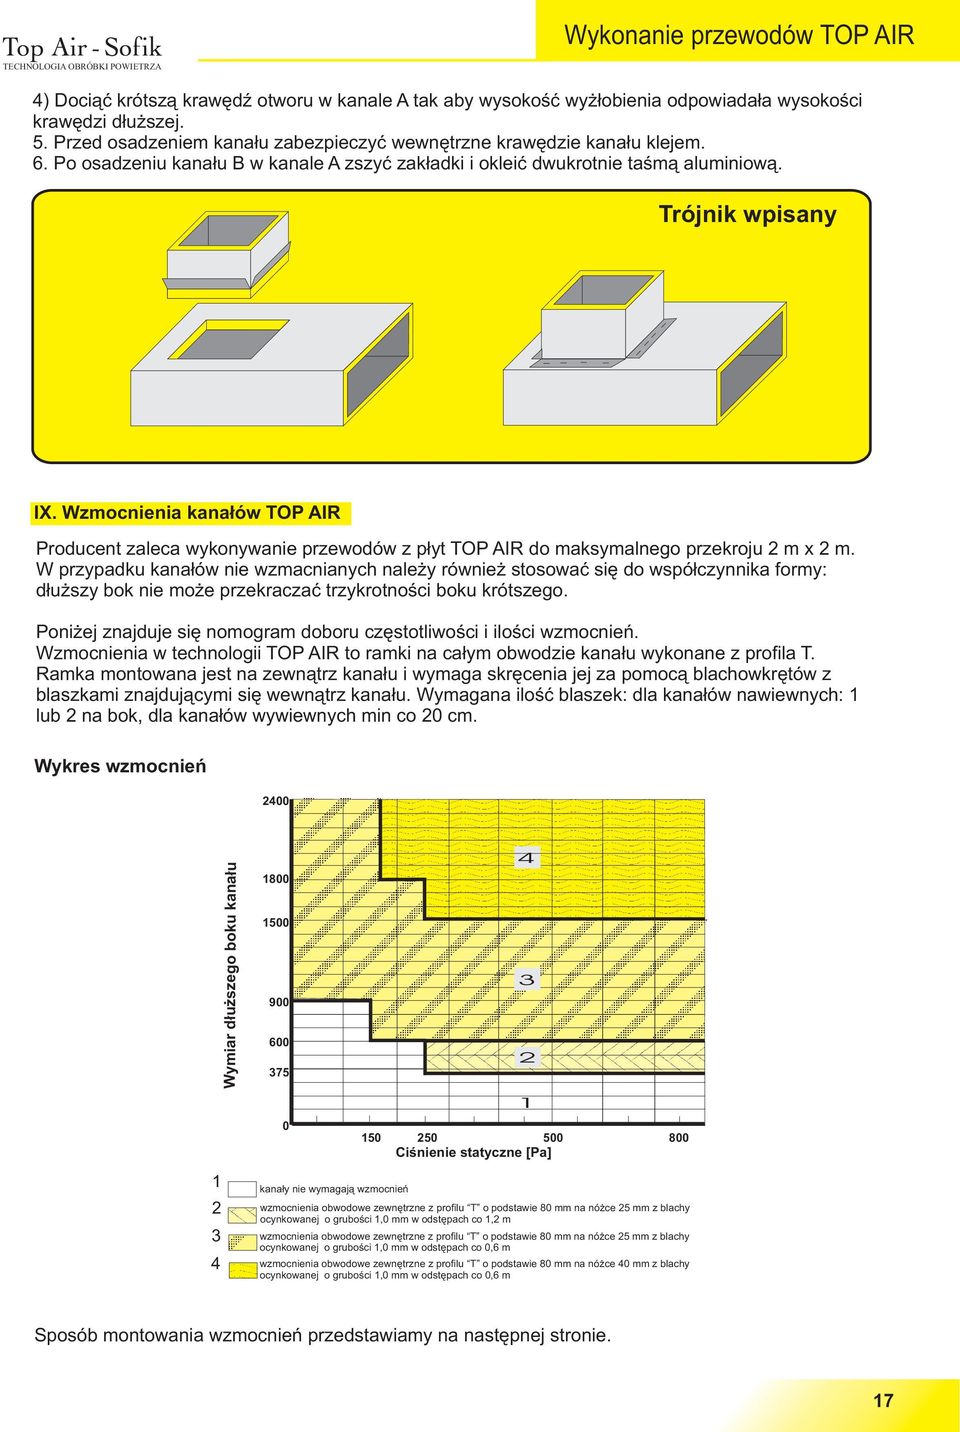 Wzmocnienia kana³ów TOP AIR Producent zaleca wykonywanie przewodów z p³yt TOP AIR do maksymalnego przekroju m x m.